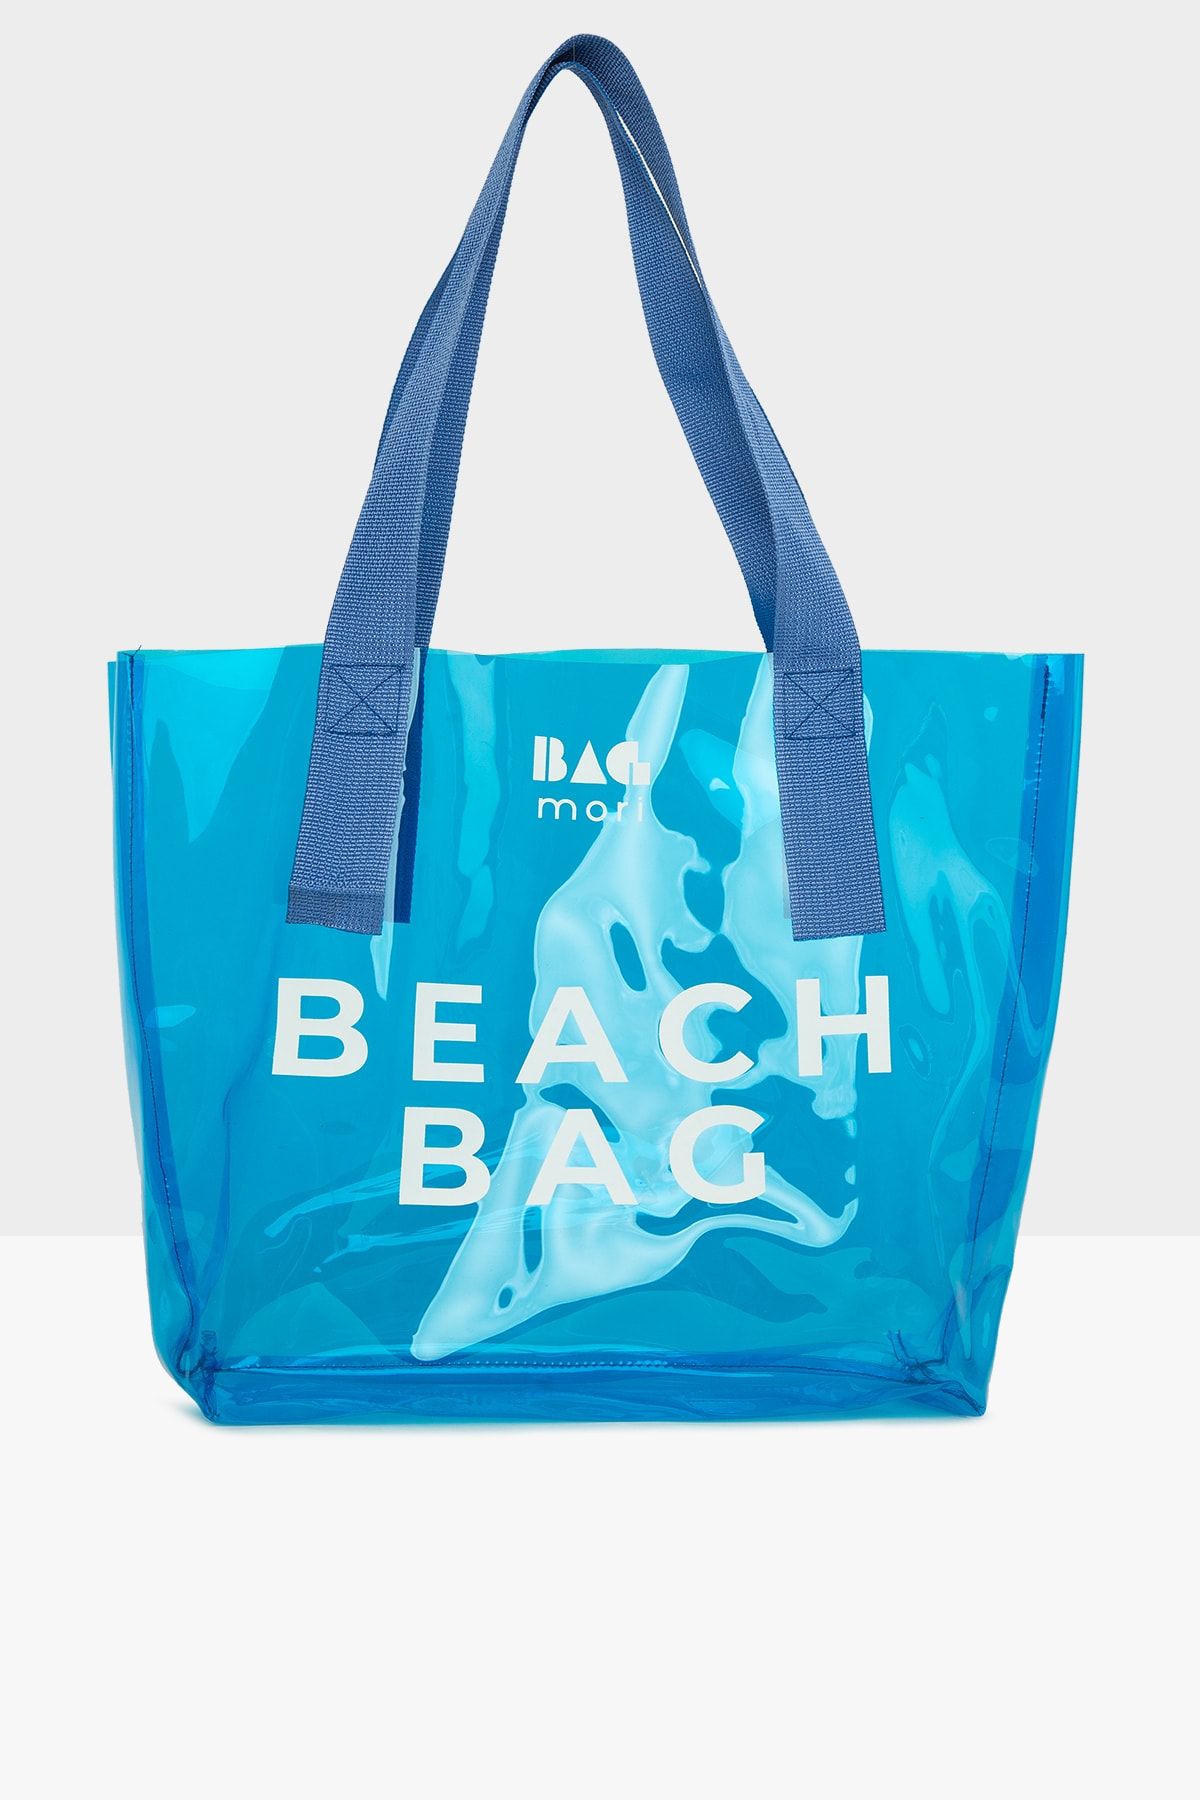 Bagmori Mavi Kadın Beach Bag Baskılı Şeffaf Plaj Çantası M000007257